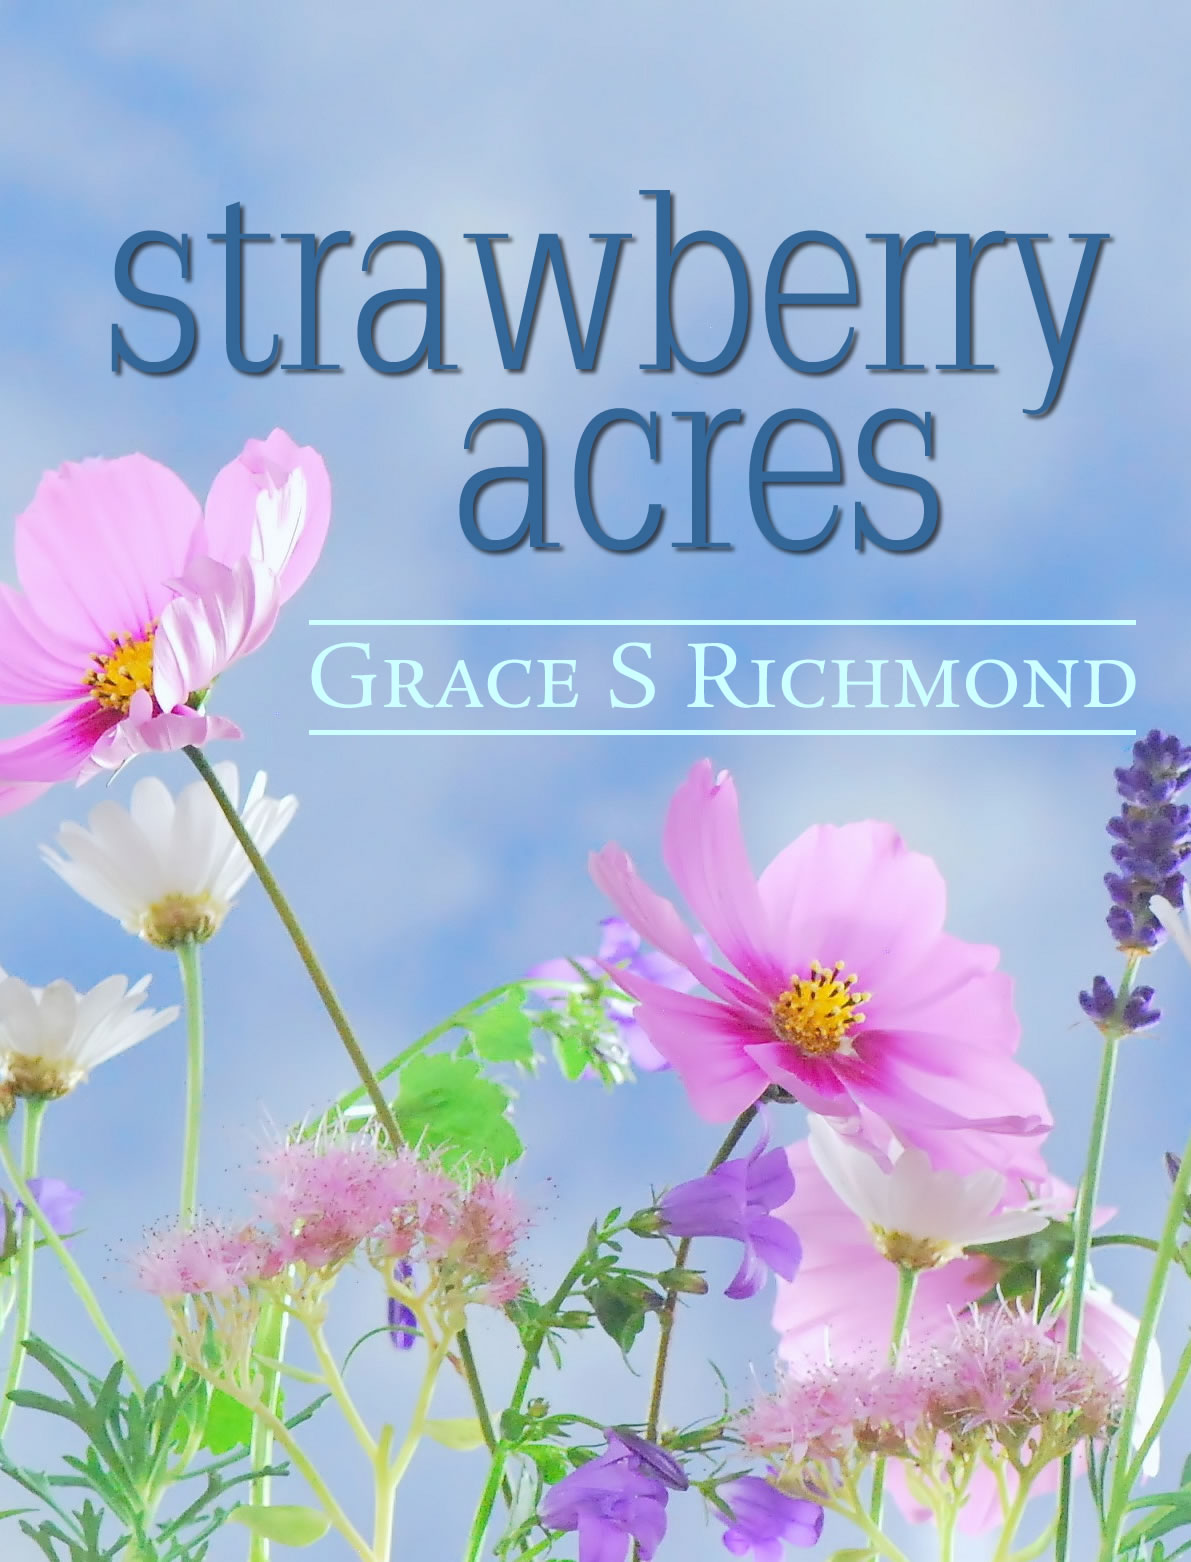 Grace S Richmond: Strawberry Acres